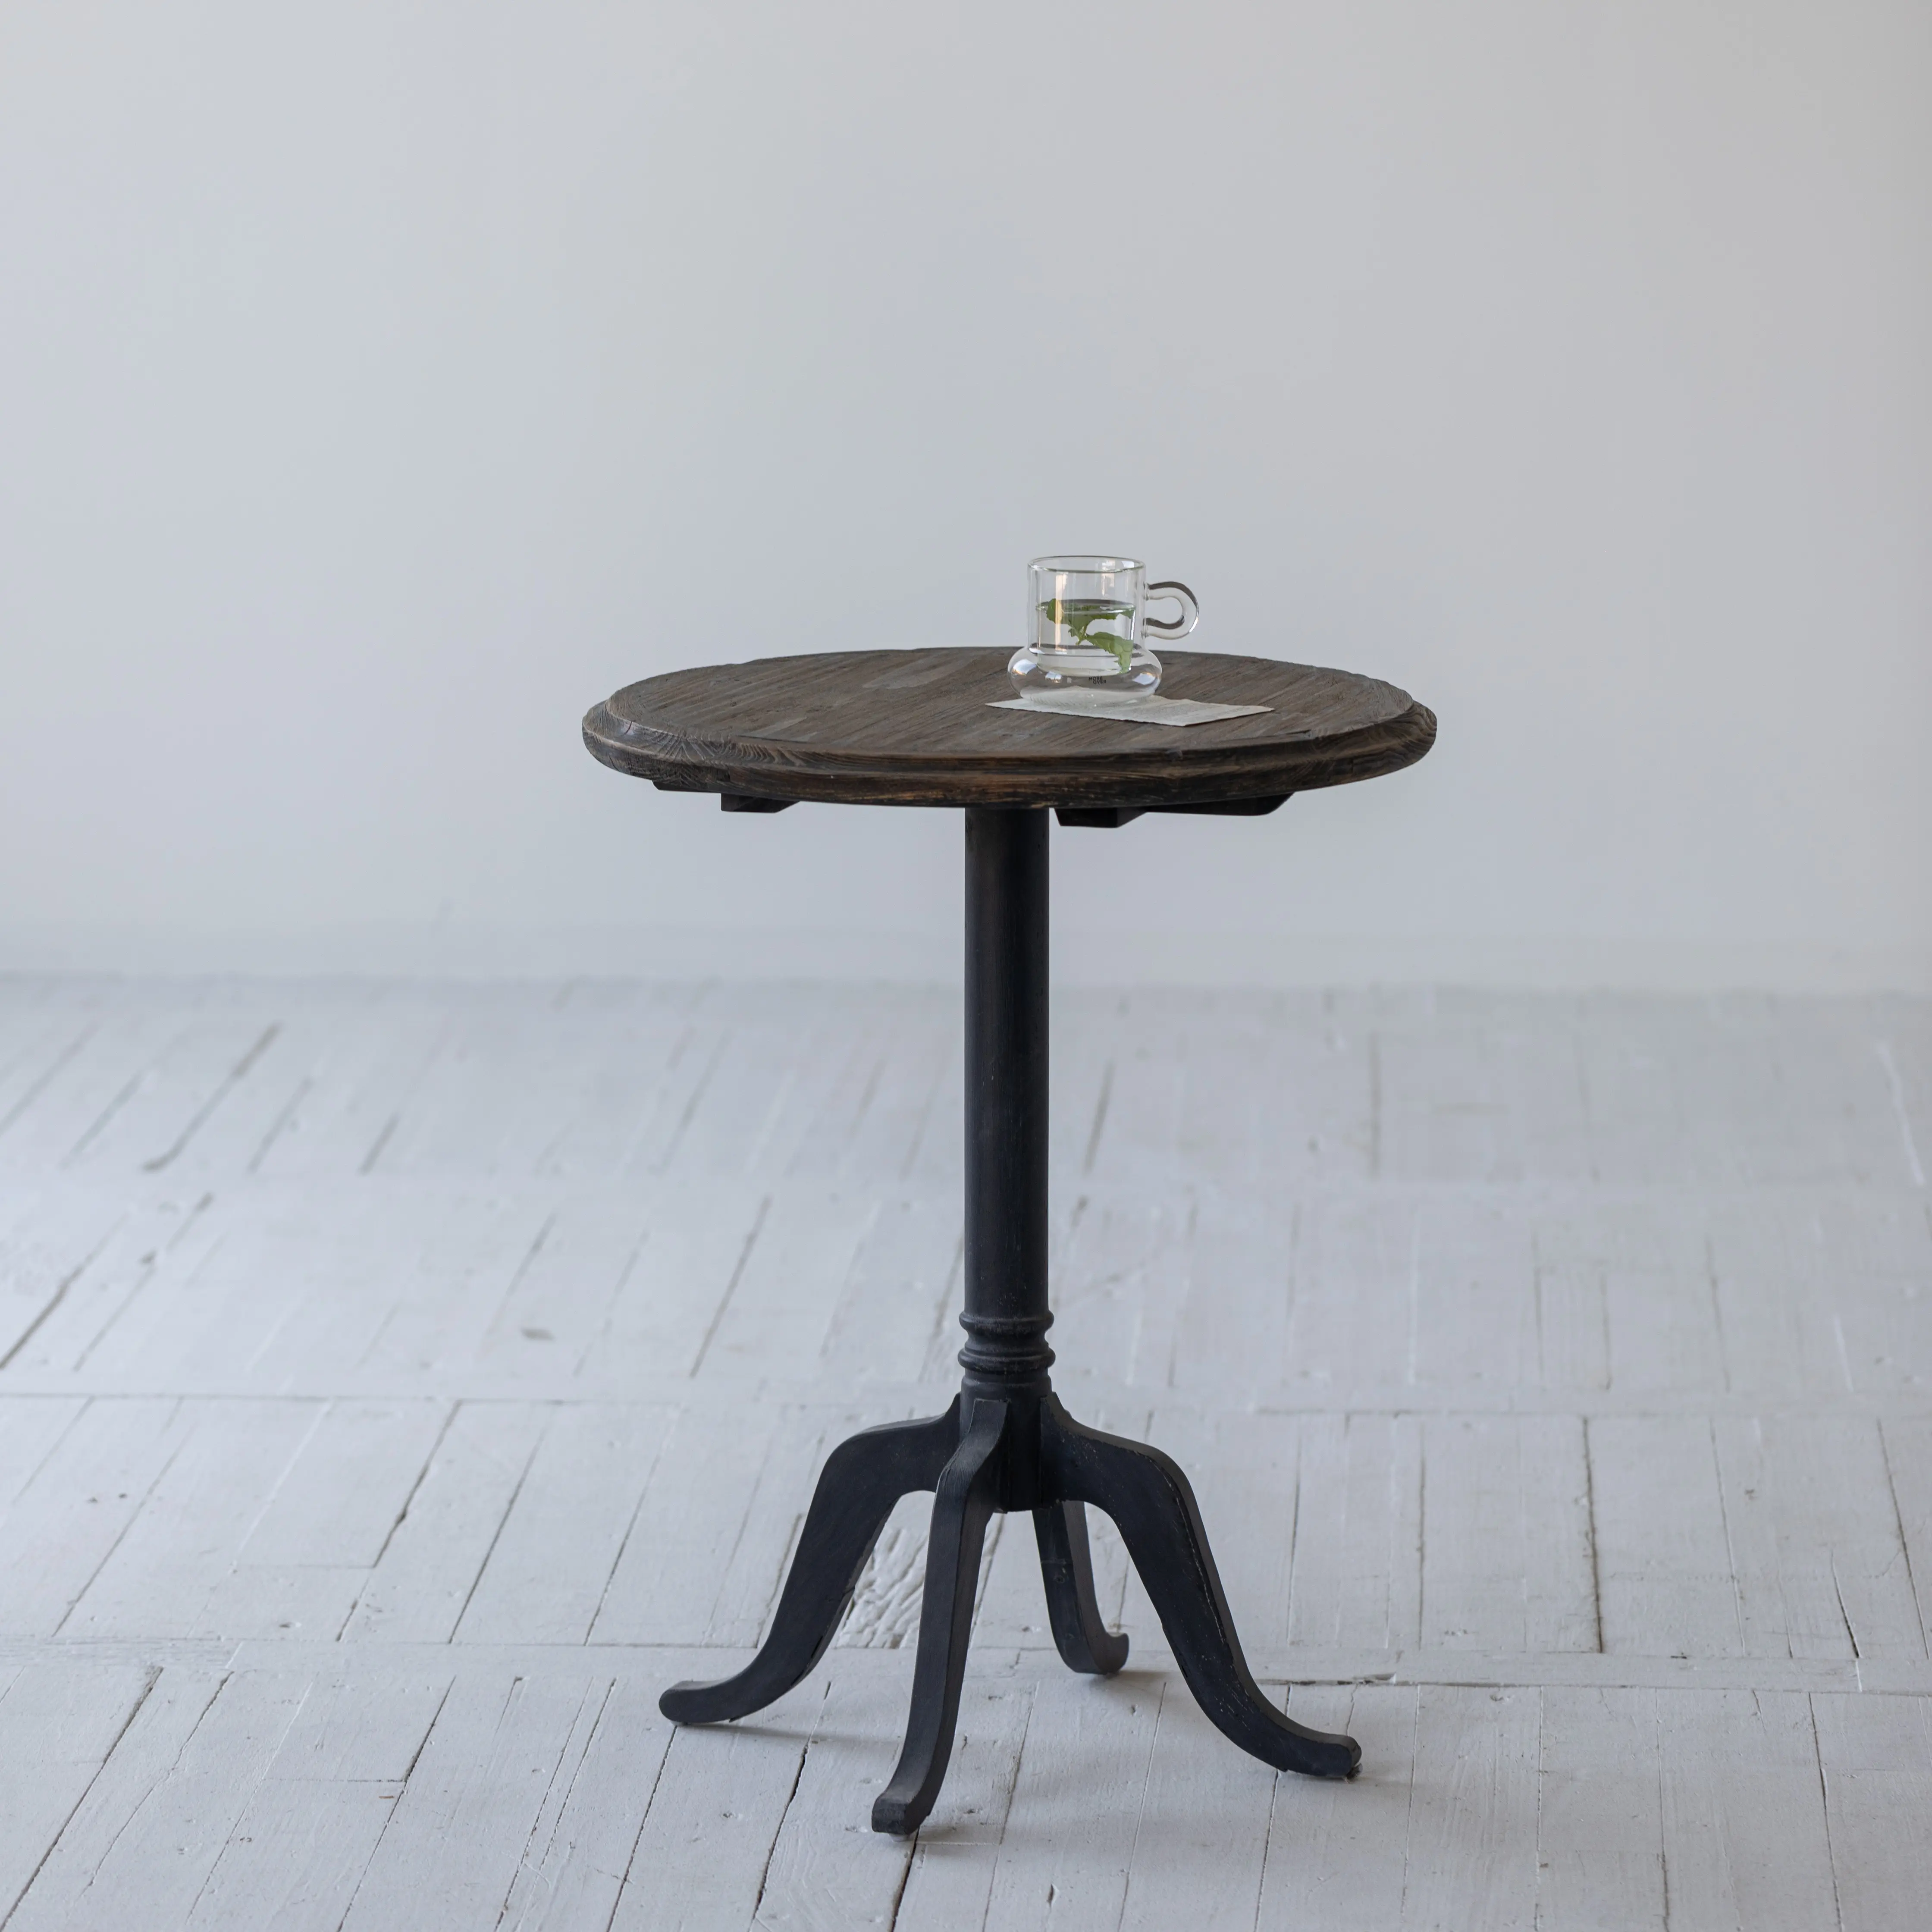 Cinese fabbricato pino riciclato lusso moderno caffè ristorante cucina soggiorno tavoli mobili rotondi di design